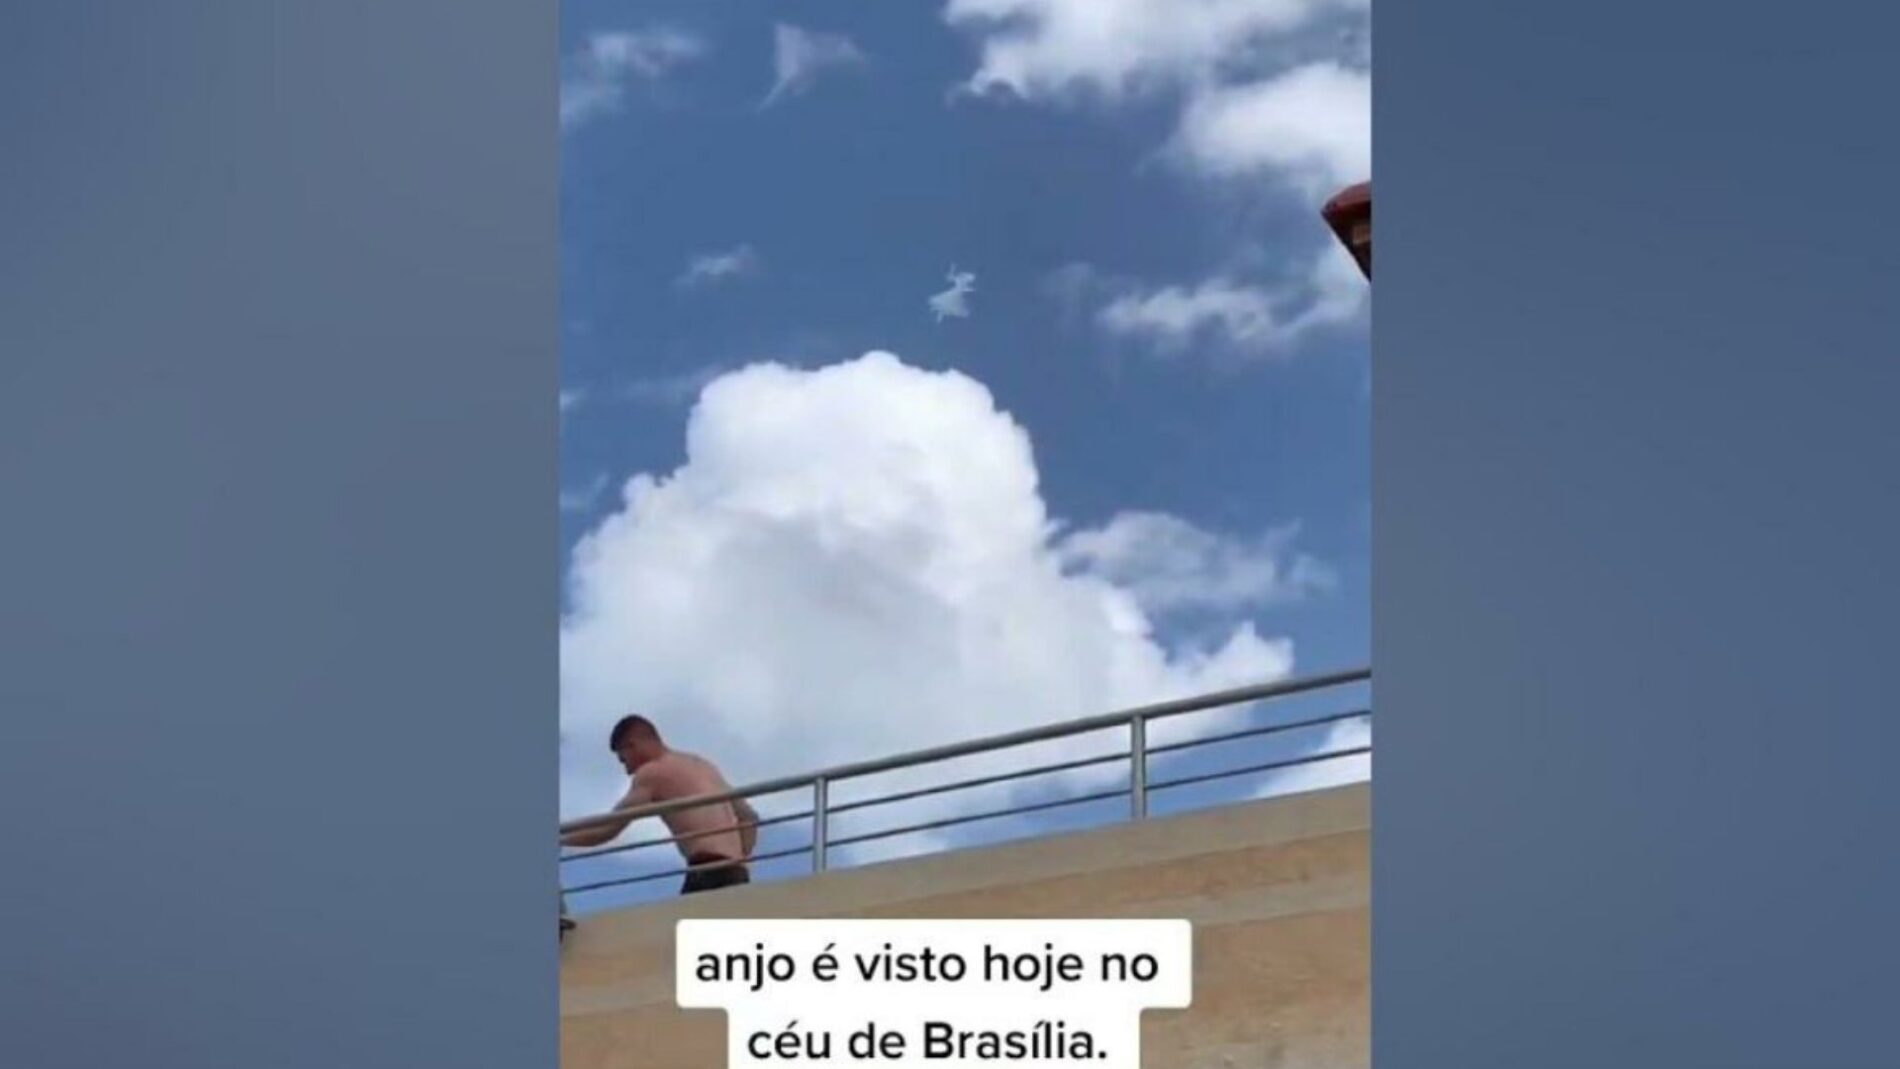 anjo aparece no ceu de brasilia